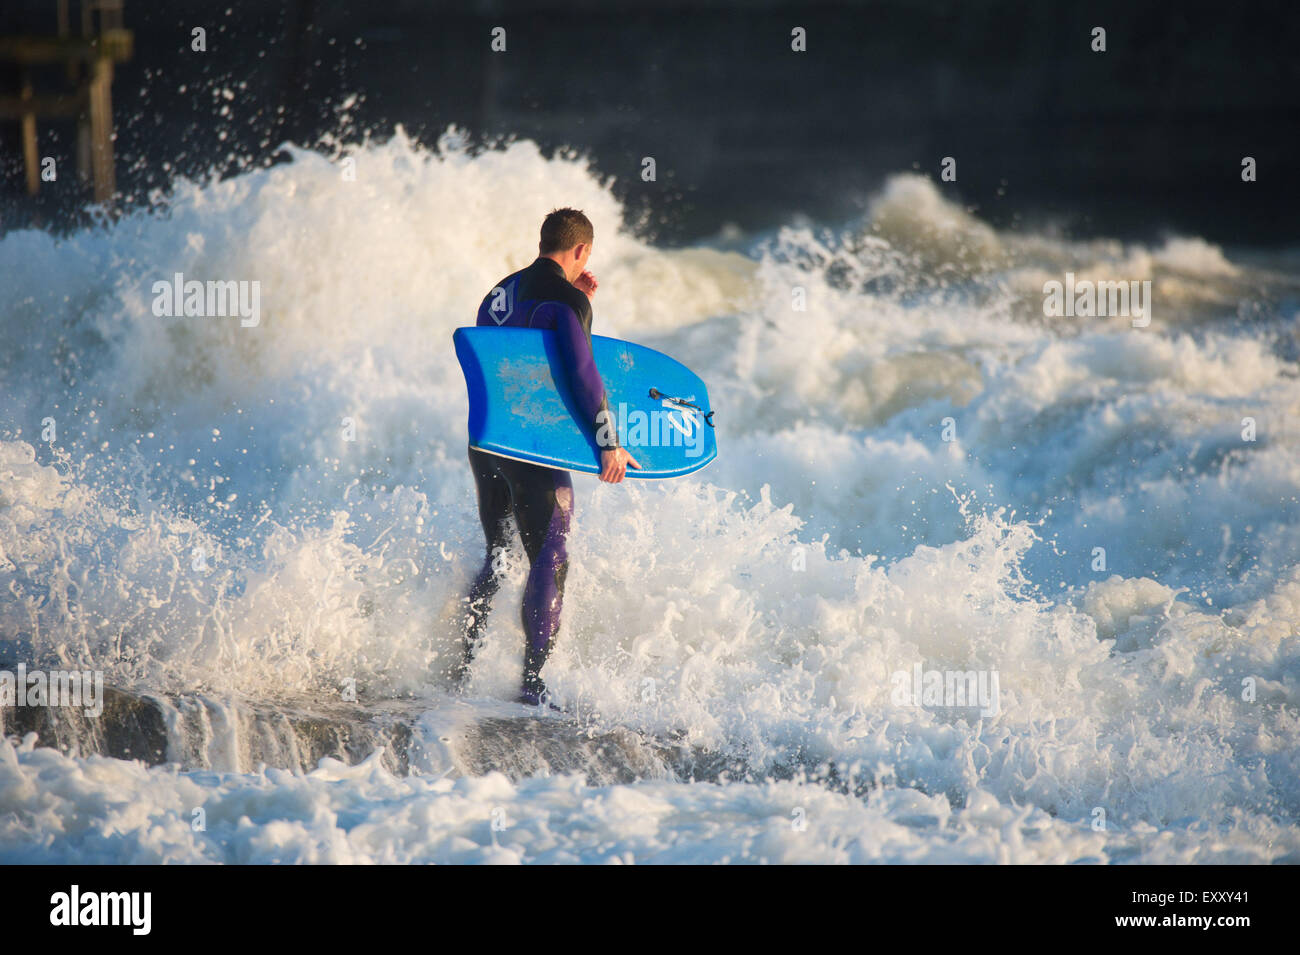 Aberystwyth Wales UK, Freitag, 17. Juli 2015 UK Wetter: Rico Martin macht das Beste aus der ungewöhnlich starke Winde und hohe Wellen-Bodyboard und Schwimmen im Meer in Aberystwyth Wales Photo Credit: Keith Morris / Alamy Live News Stockfoto